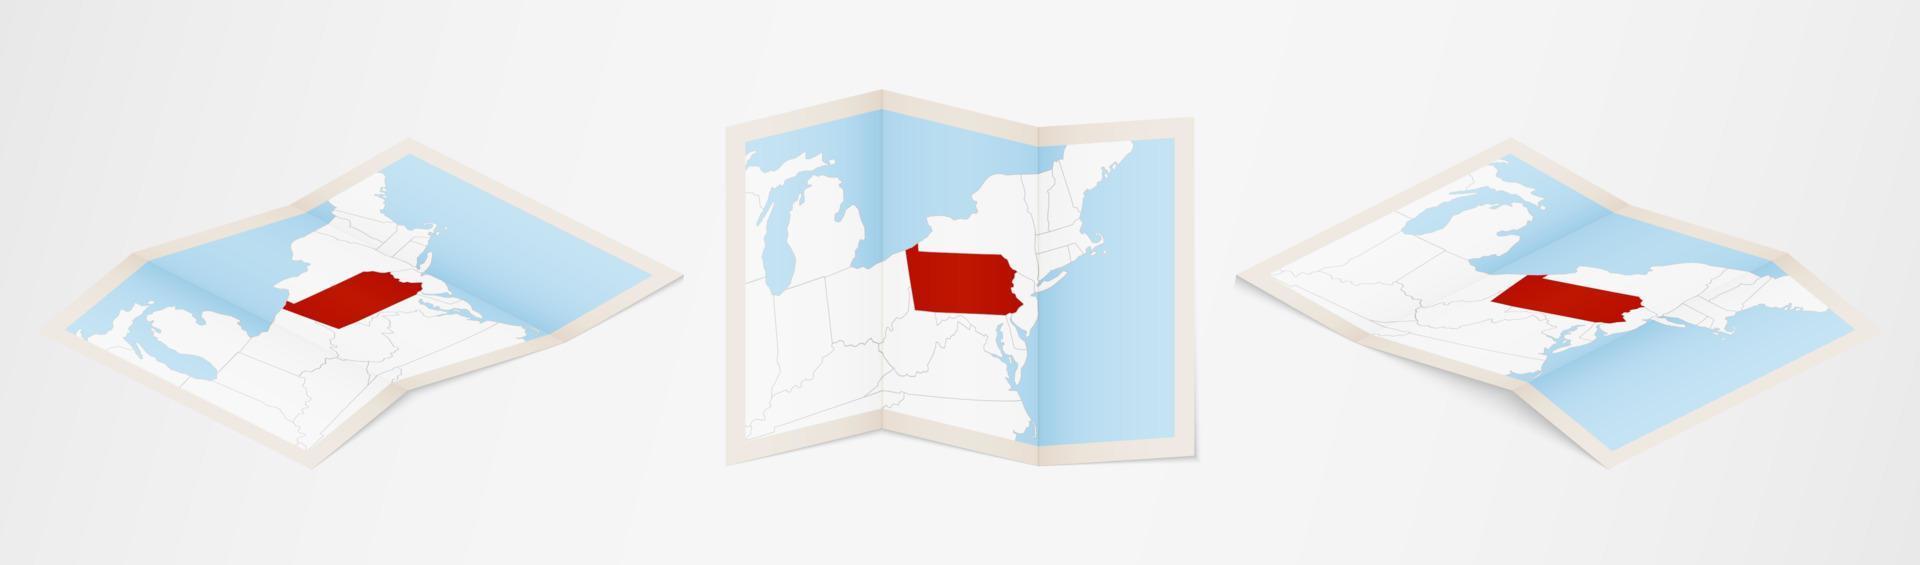 Faltkarte von Pennsylvania in drei verschiedenen Versionen. vektor